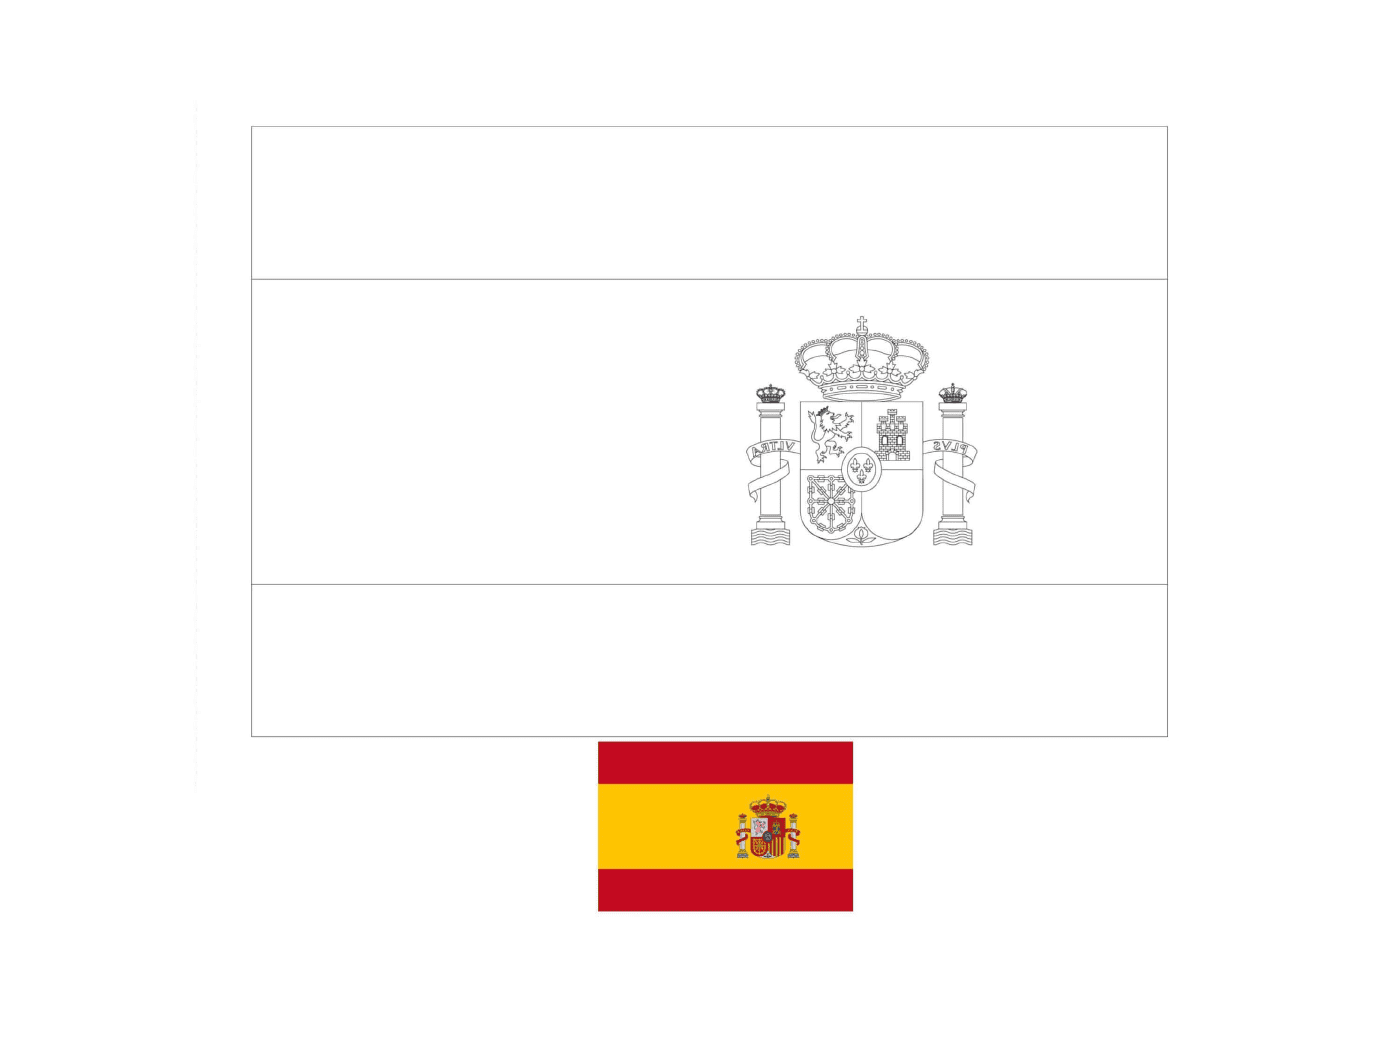  Bandiera della Spagna disegnata con i colori 